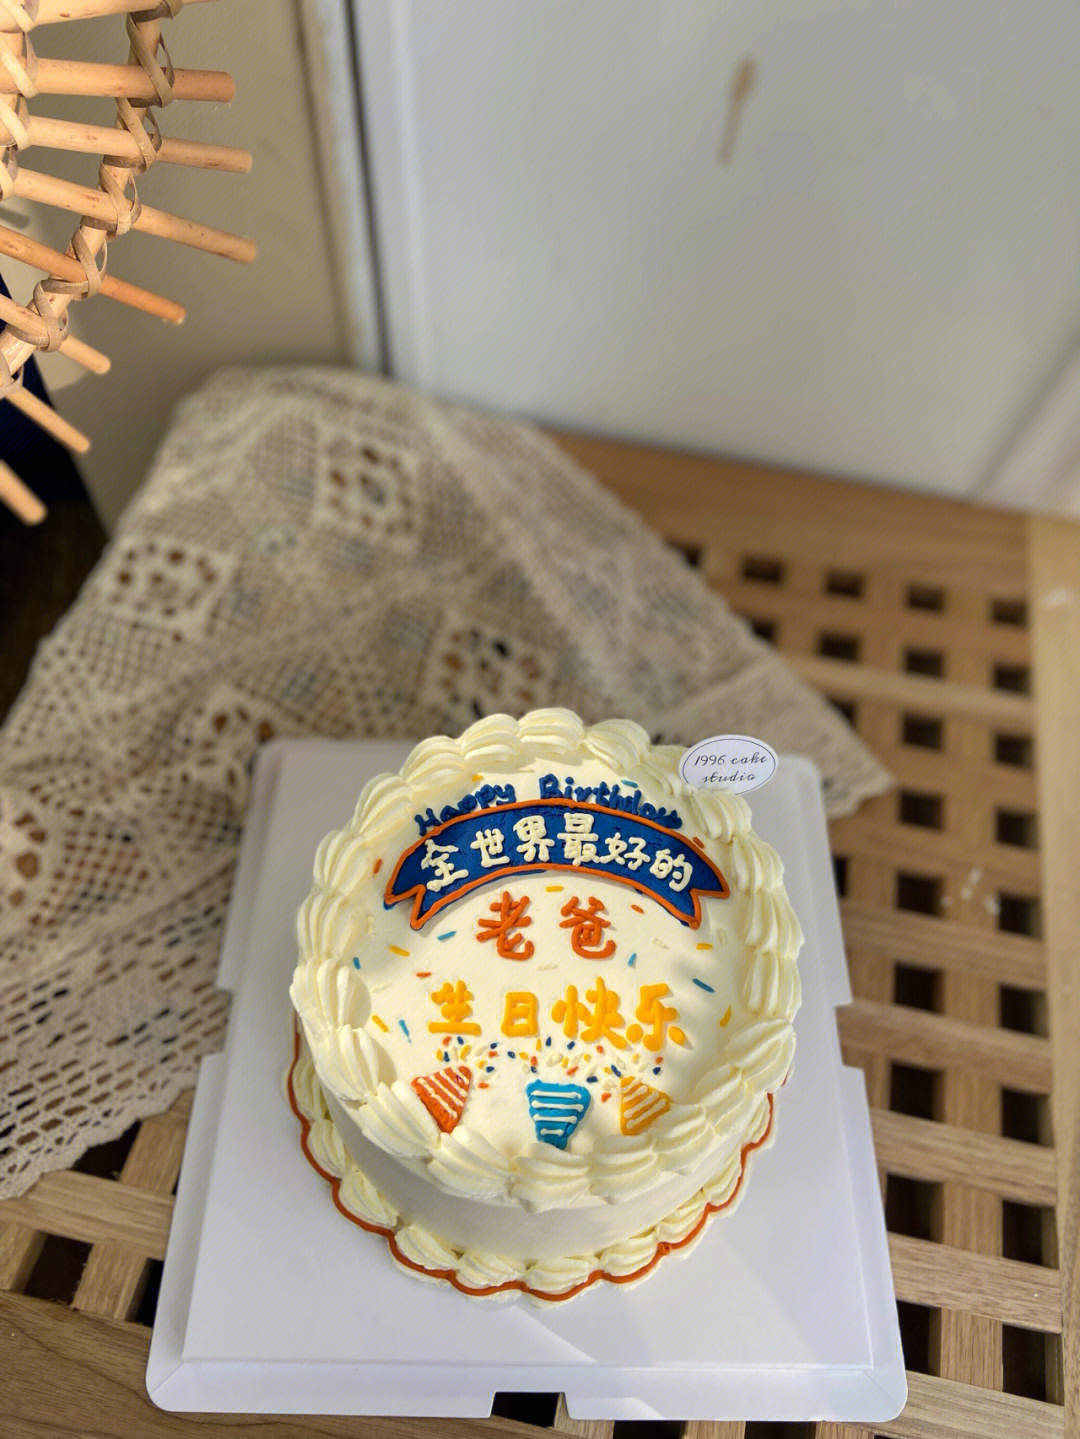 老爸生日蛋糕全世界最好的爸爸蛋糕定制徐州